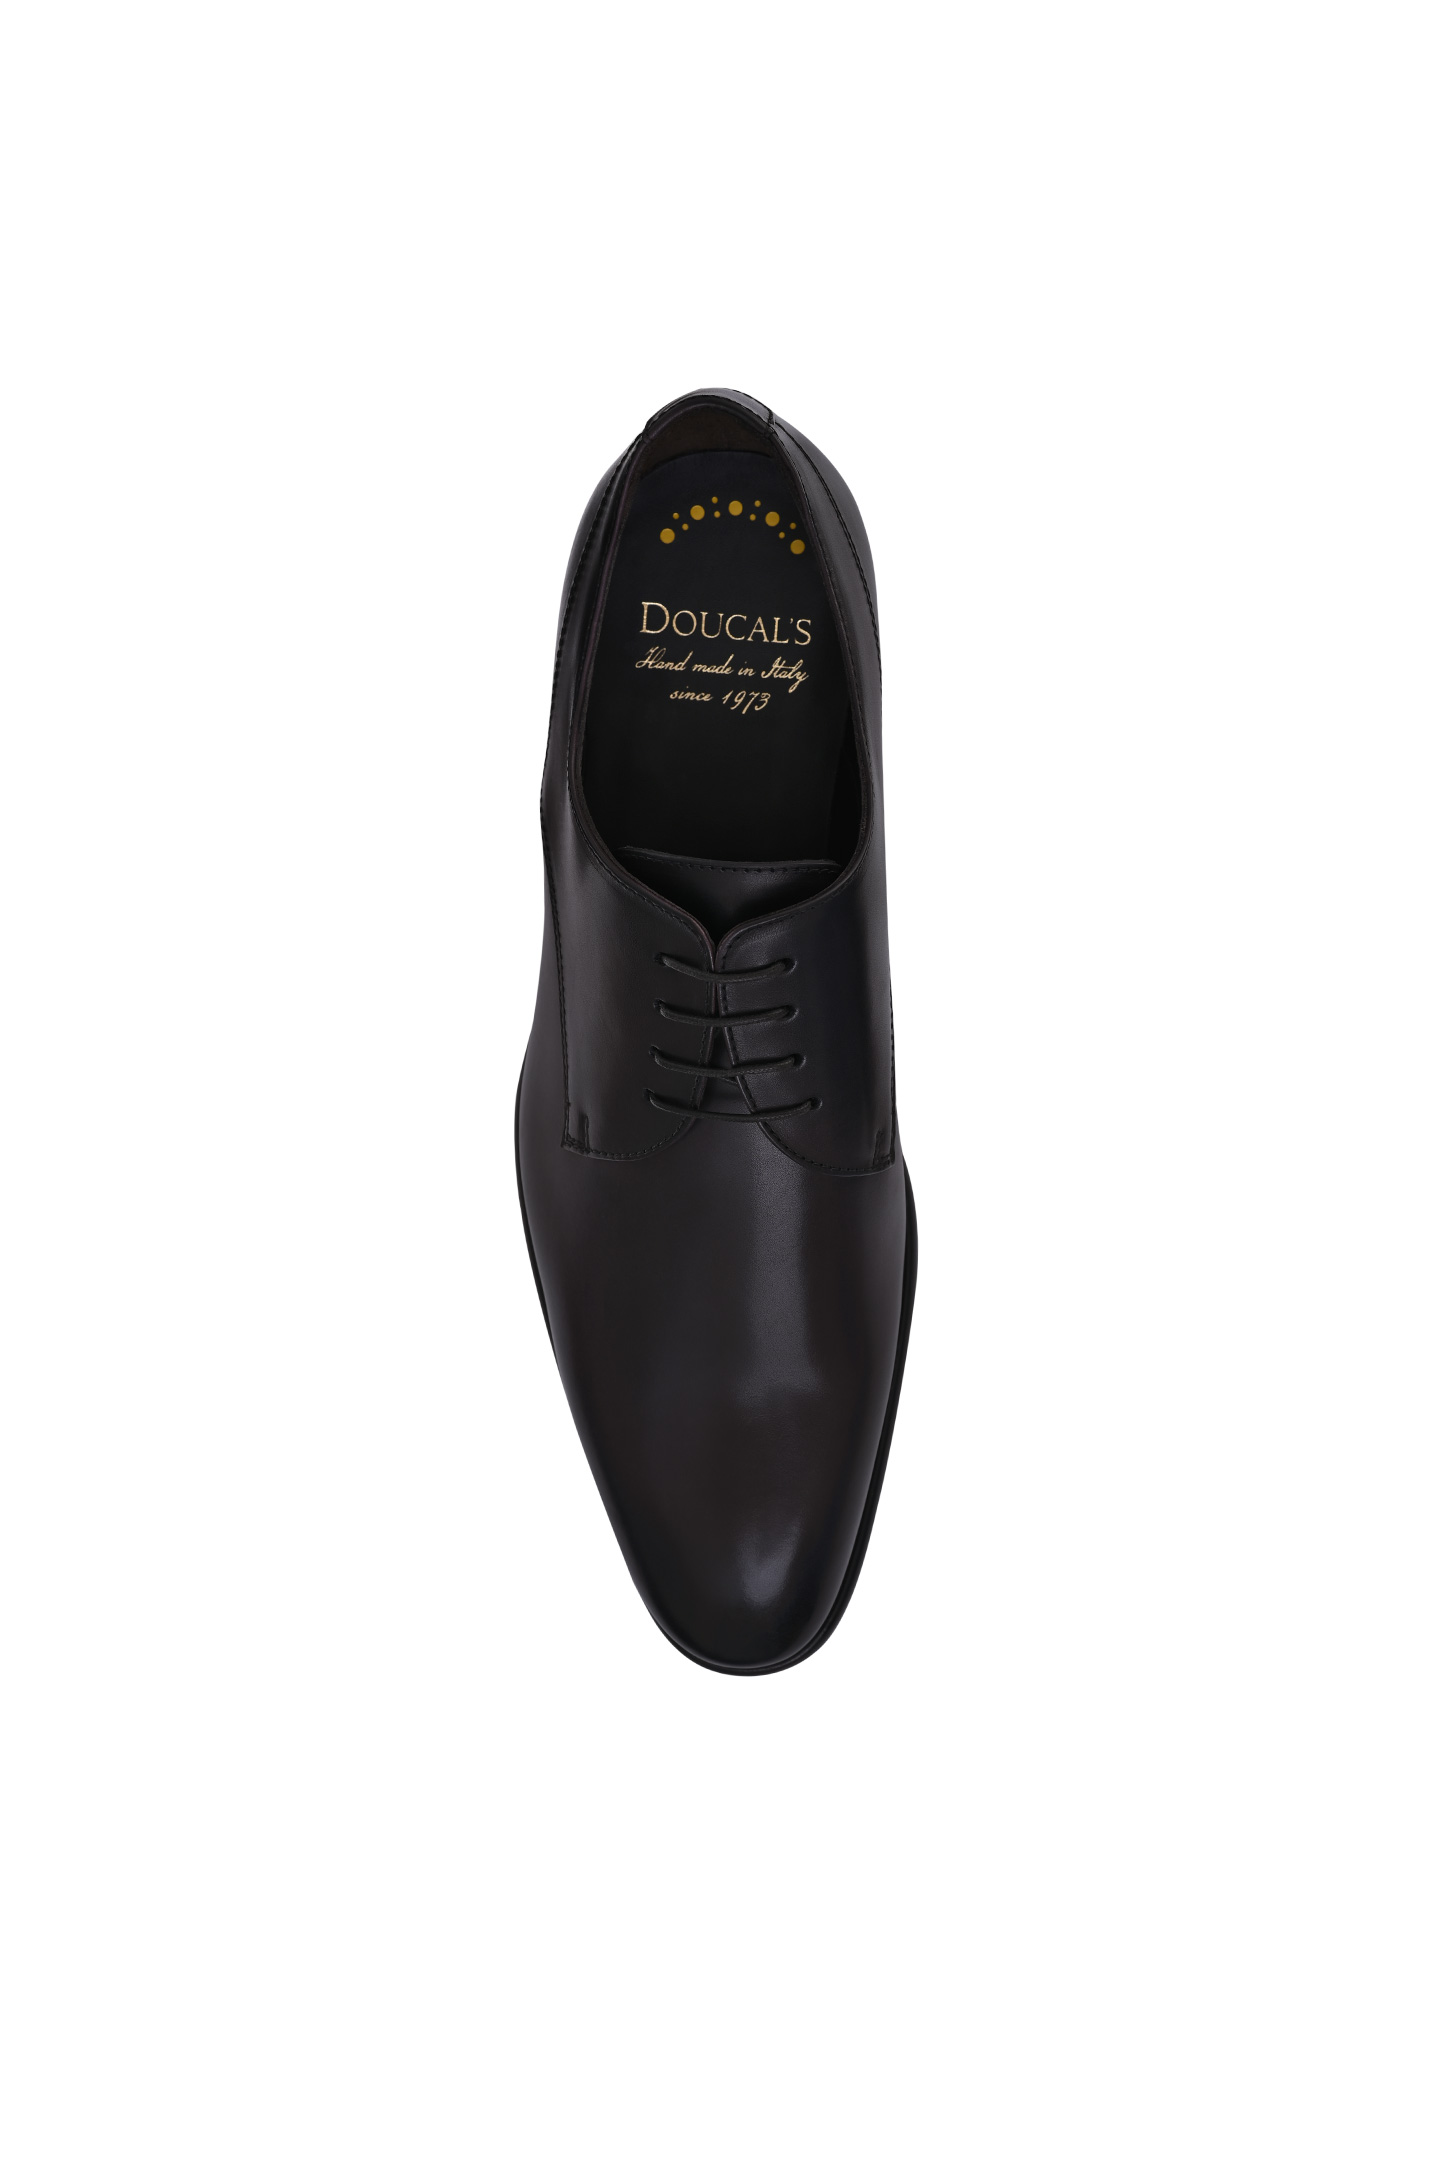 Туфли DOUCAL'S DU1856BERNUF159, цвет: Темно-коричневый, Мужской